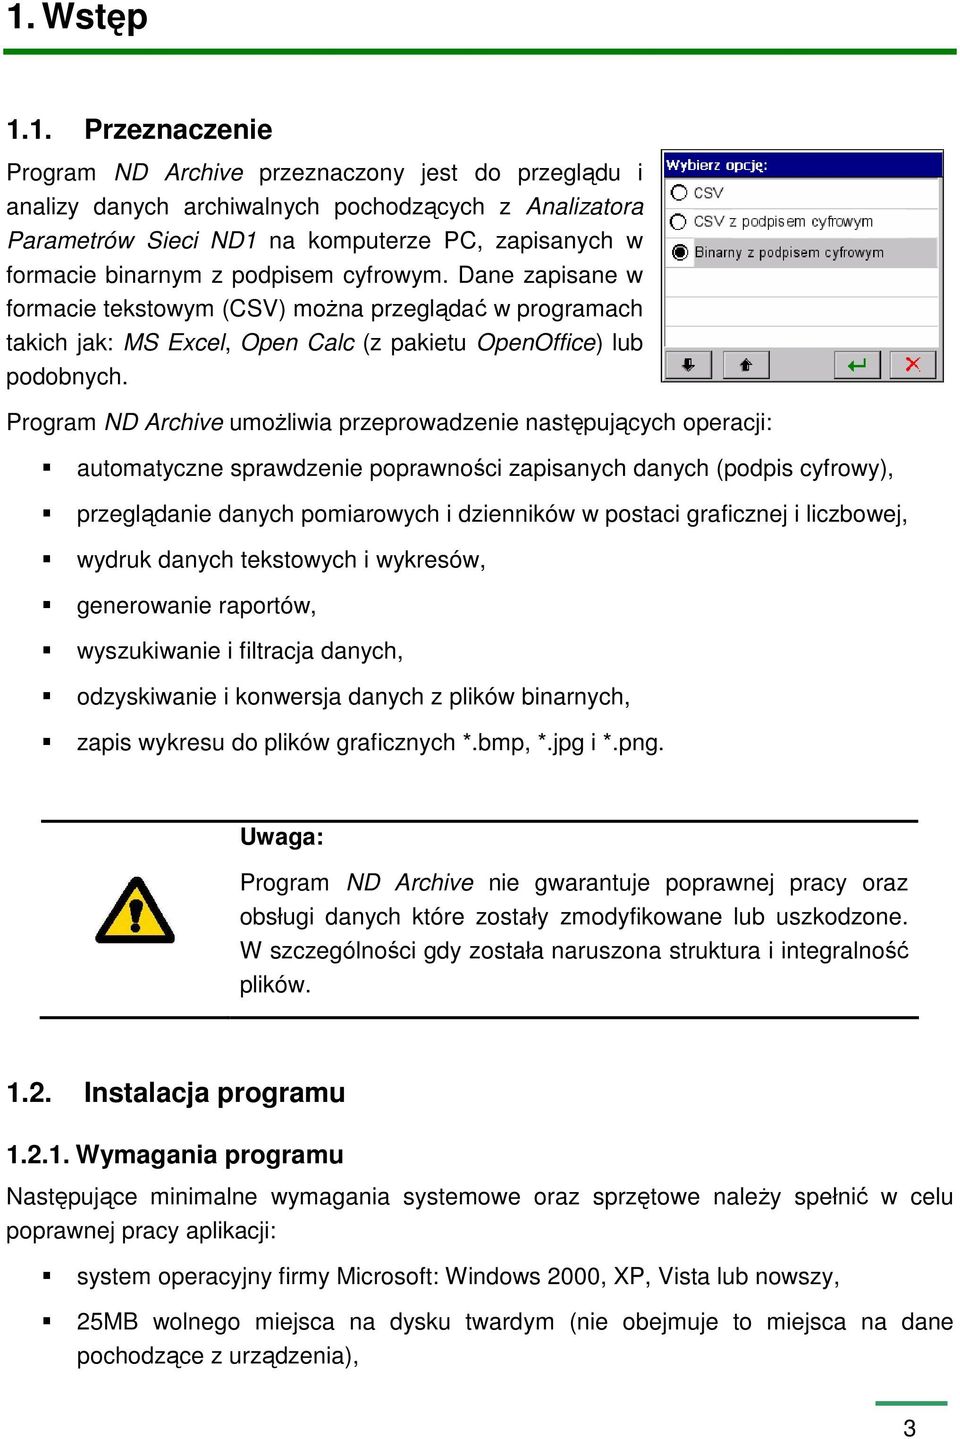 Program ND Archive umoŝliwia przeprowadzenie następujących operacji: automatyczne sprawdzenie poprawności zapisanych danych (podpis cyfrowy), przeglądanie danych pomiarowych i dzienników w postaci